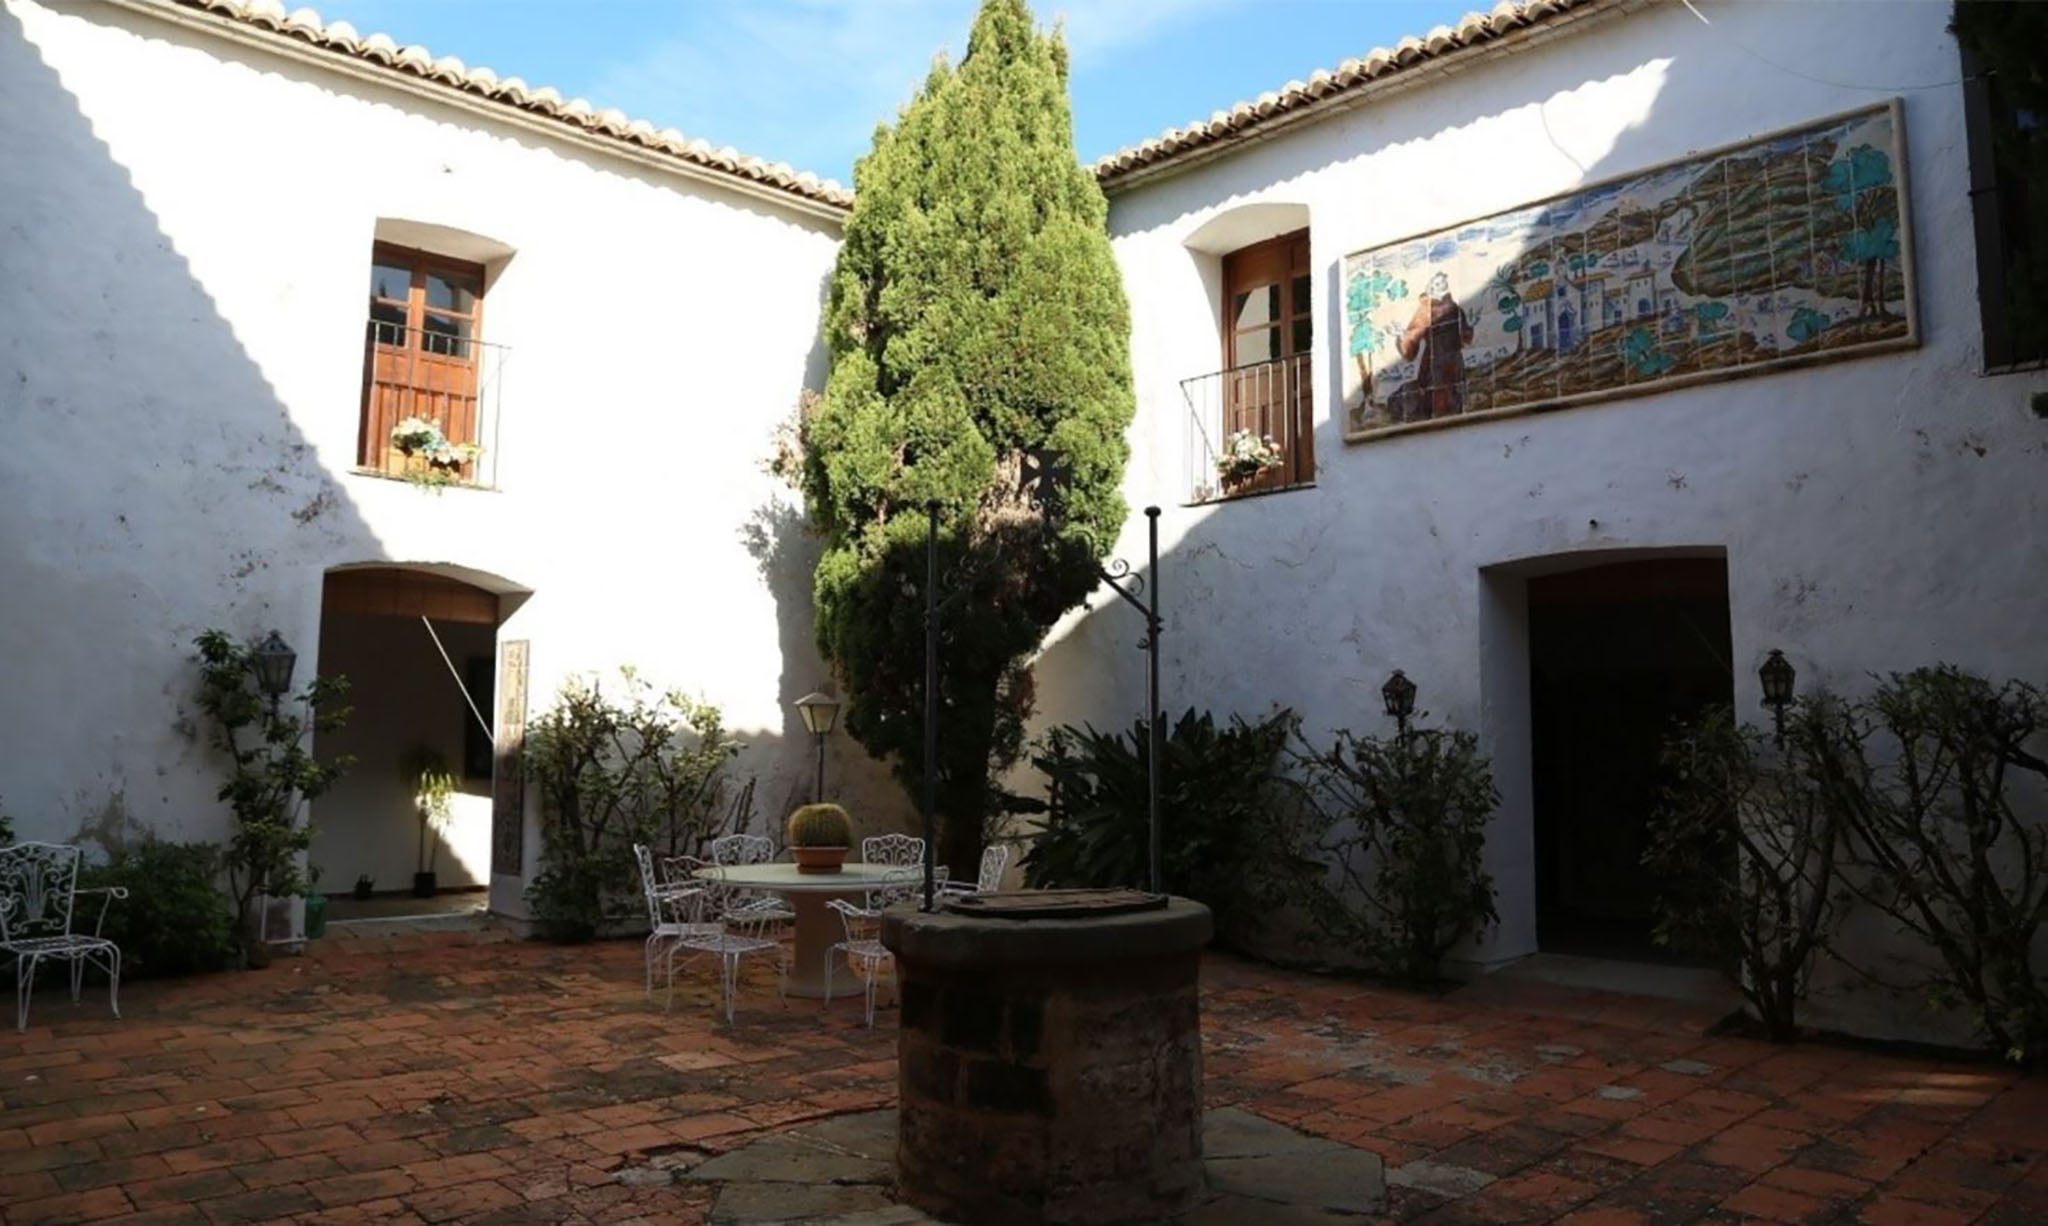 Patio interior del convento y el pozo – Informe de valoración patrimonial preliminar de la Generalitat Valenciana